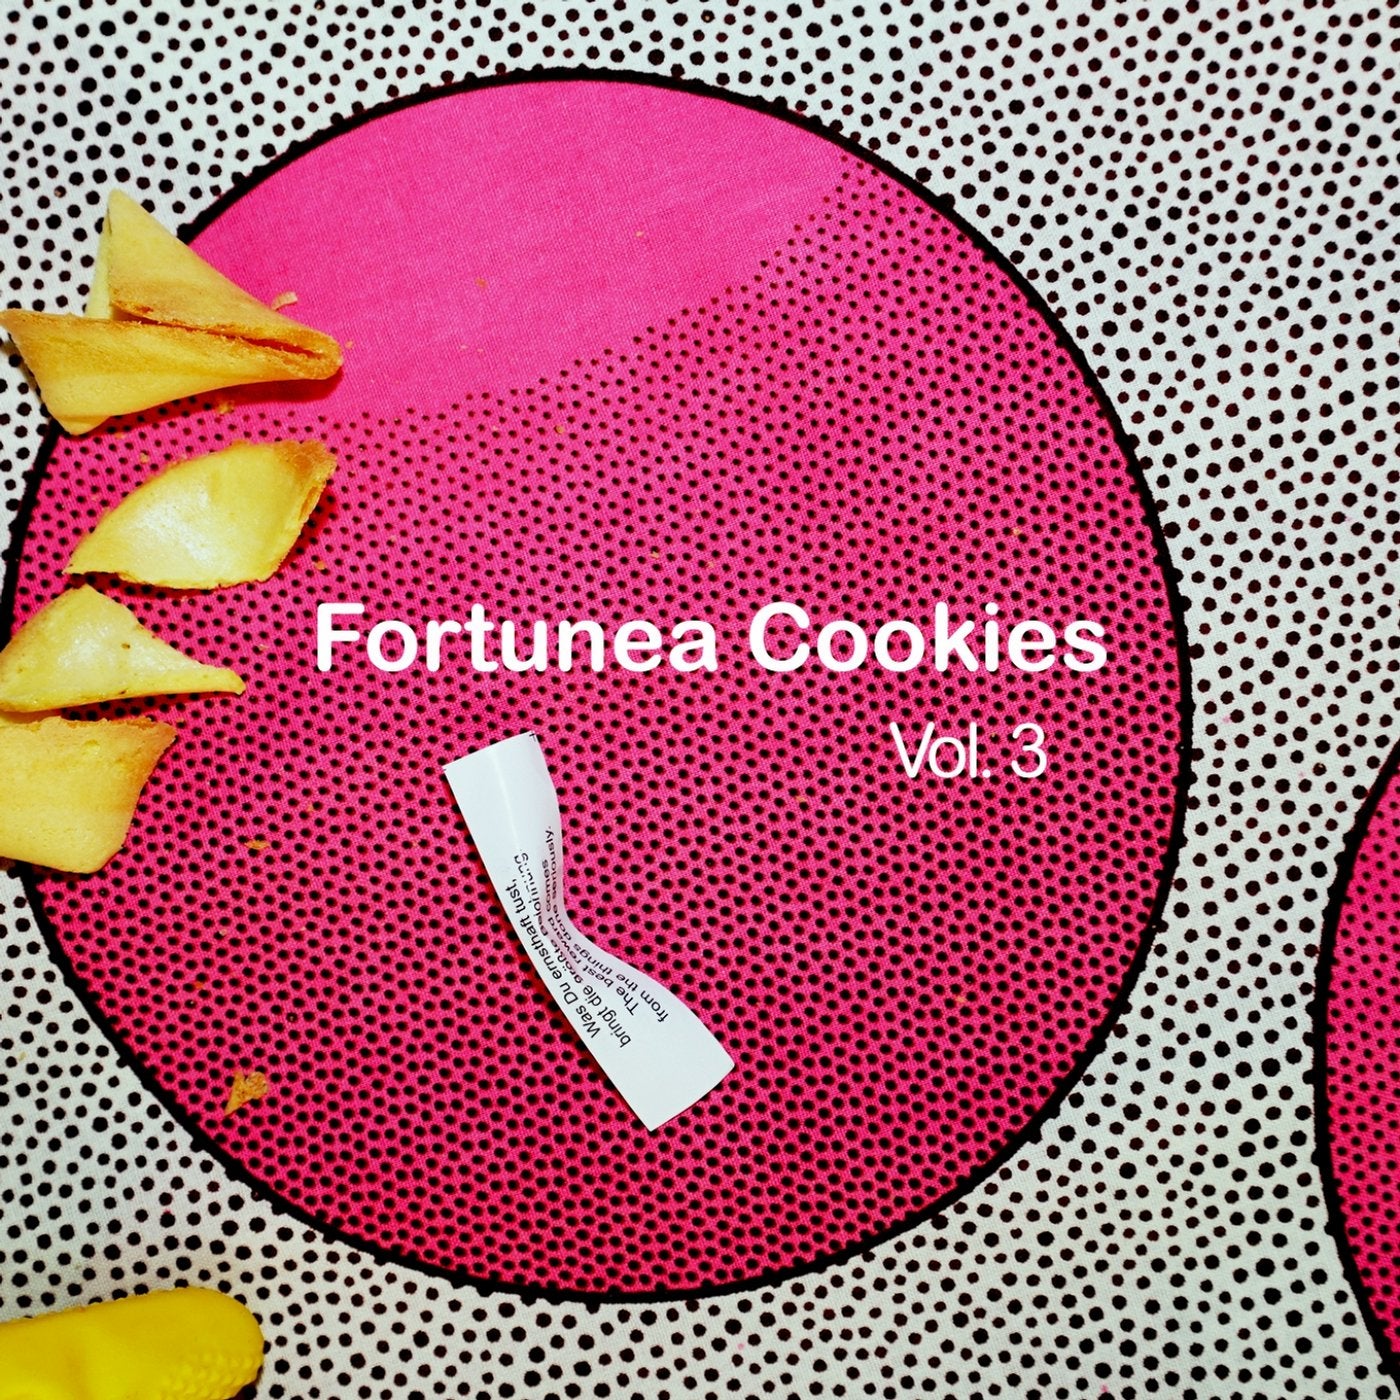 Fortunea Cookies Vol. 3